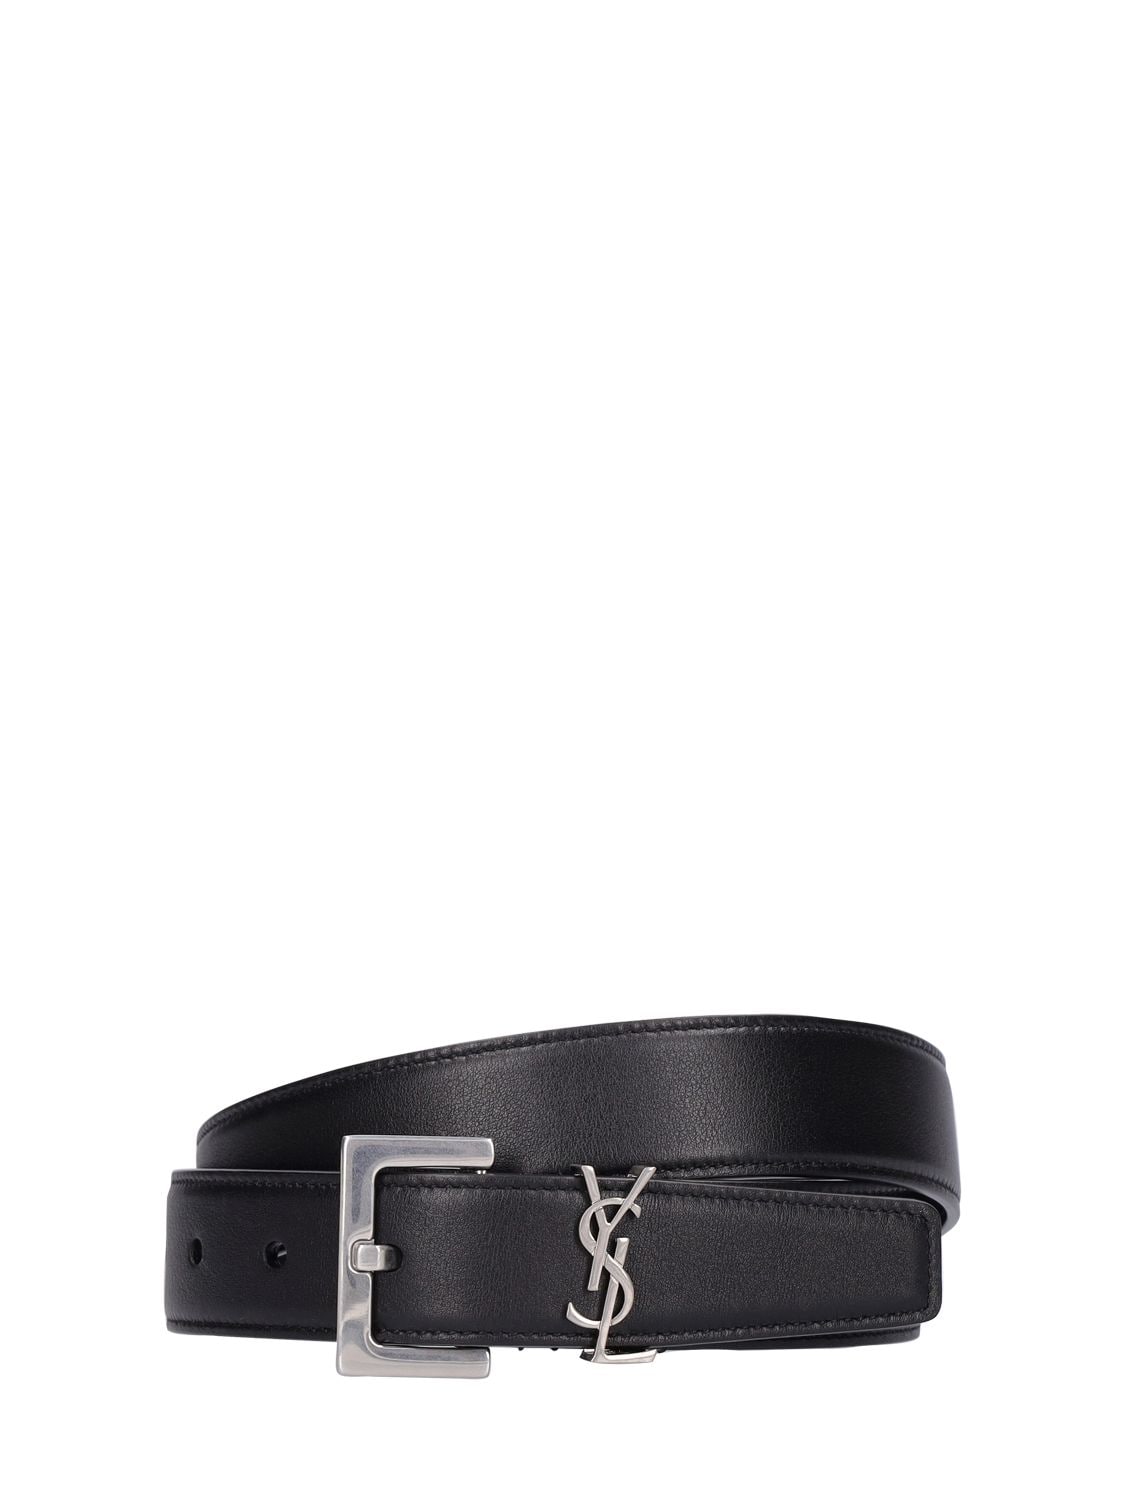 Saint Laurent Embellished Textured-leather Belt - Women - Black Belts